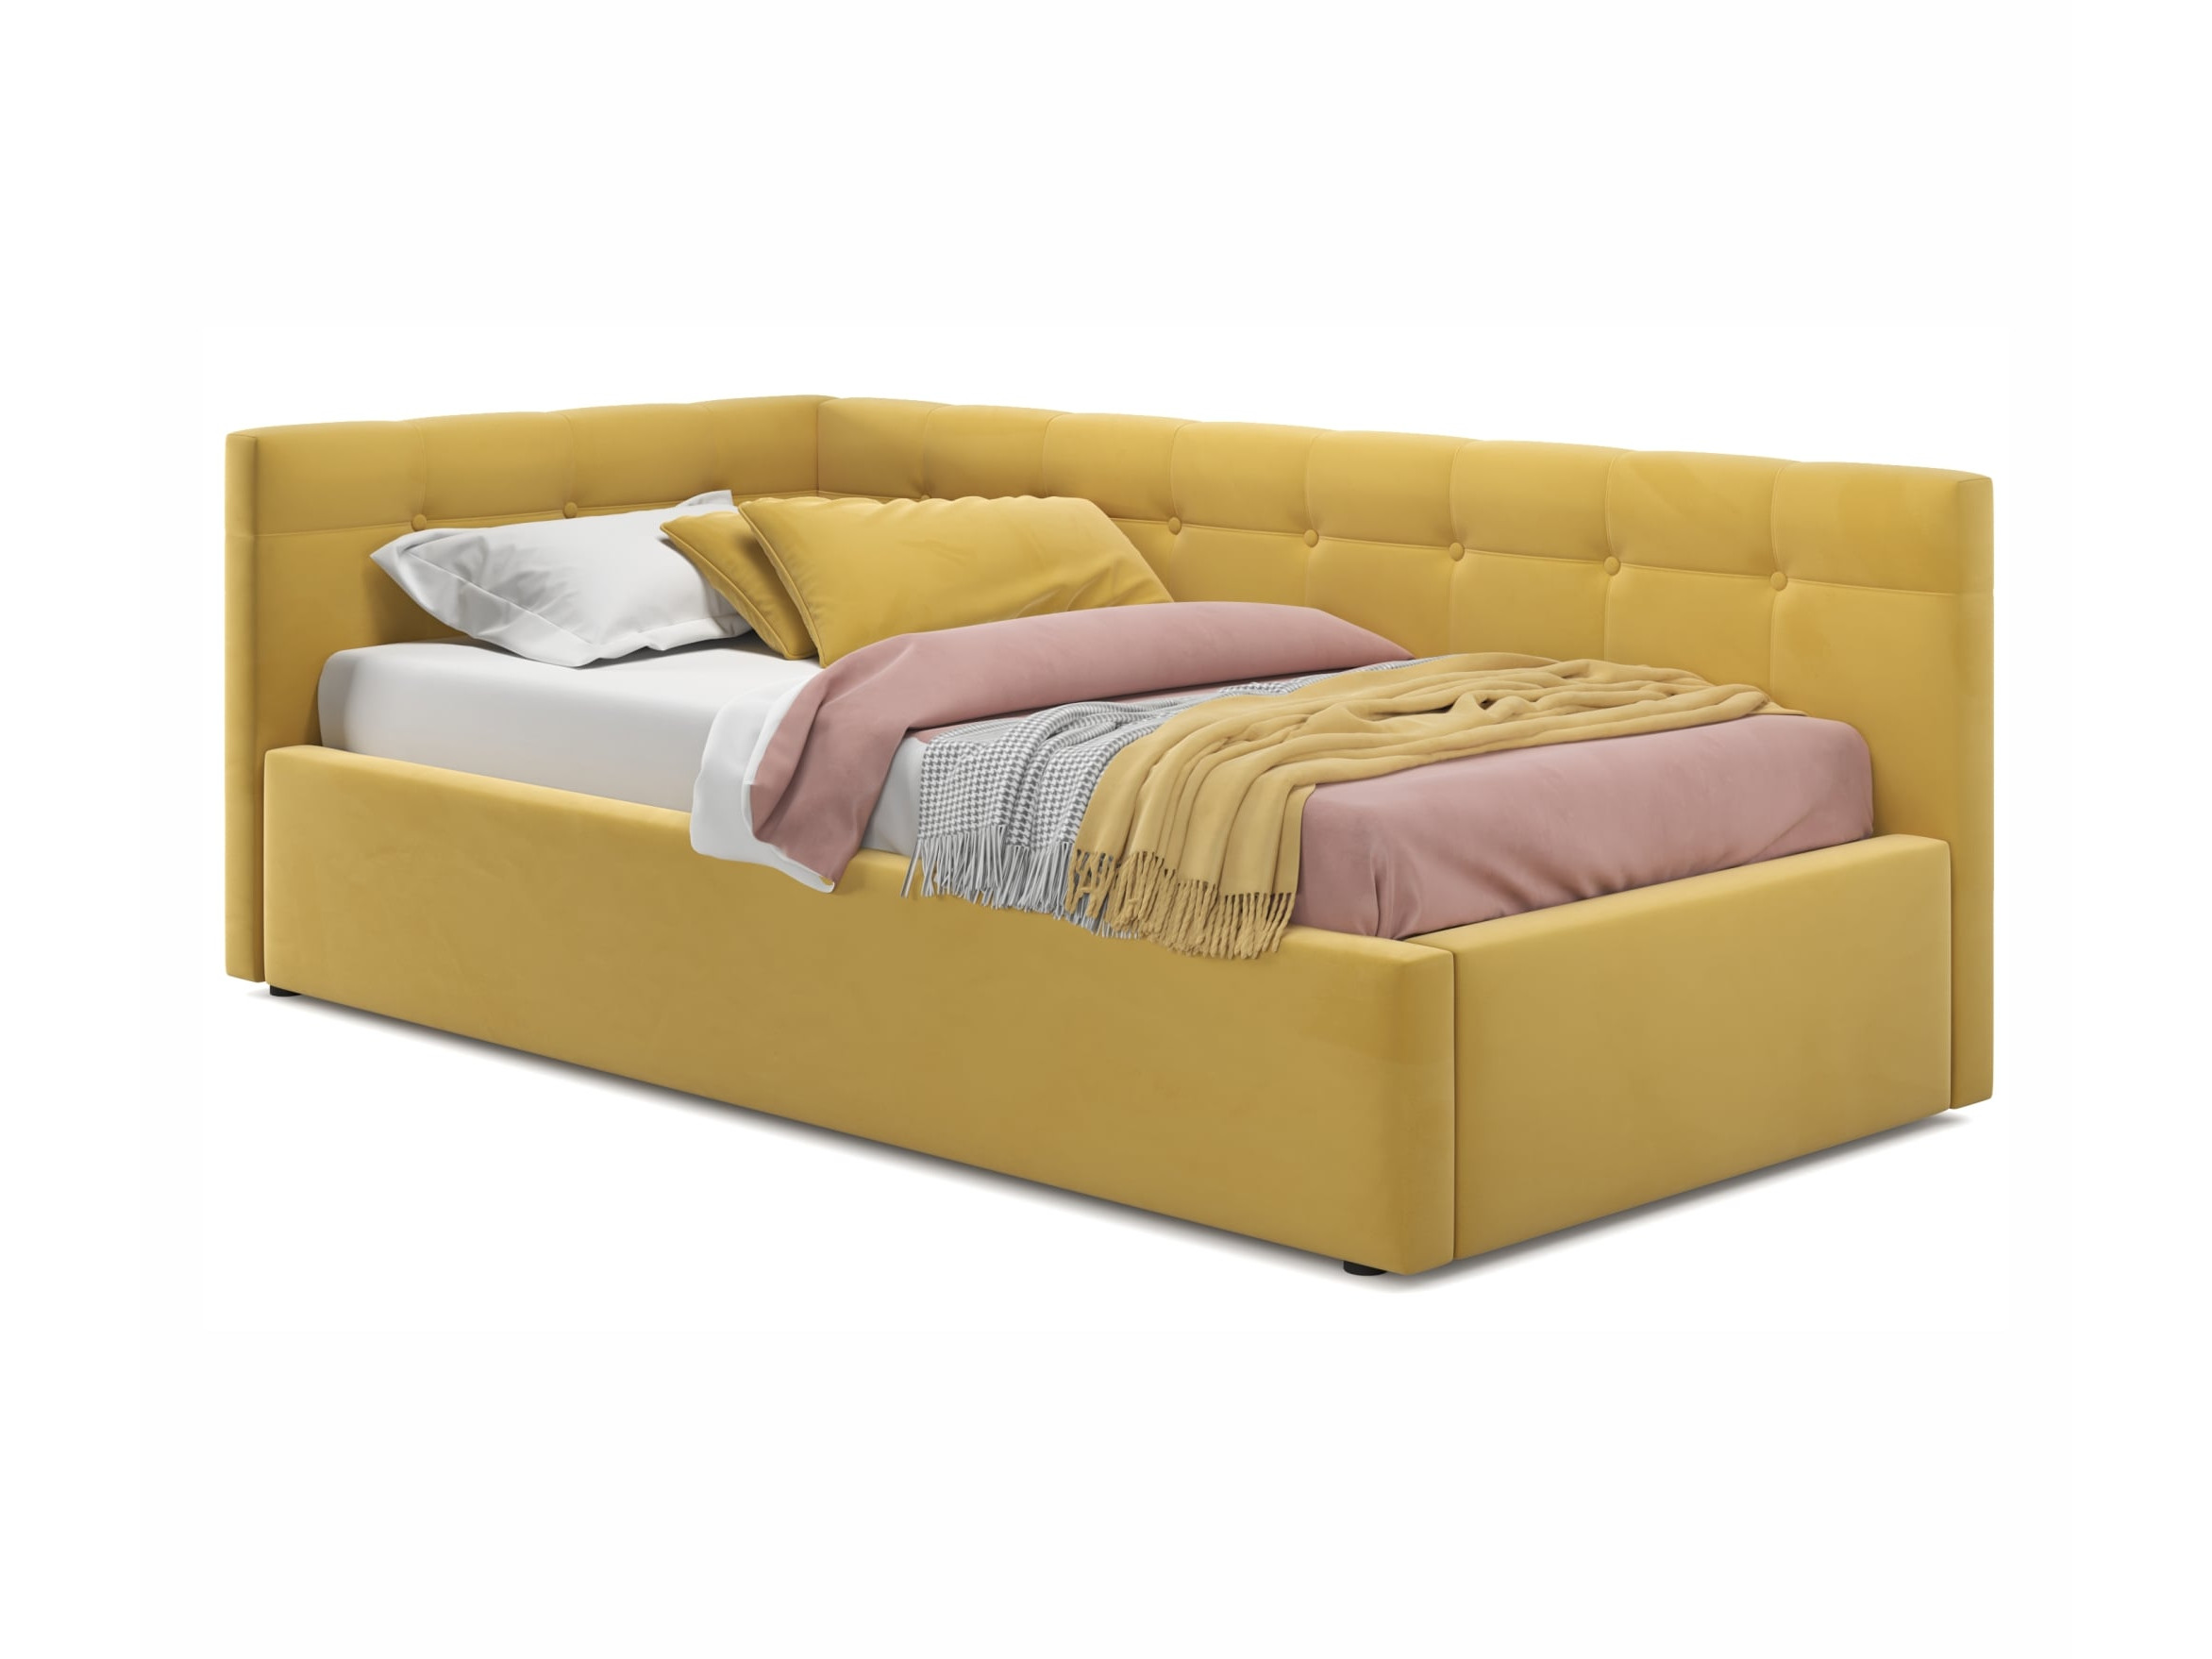 Односпальная кровать-тахта Colibri 800 желтая с подъемным механизмом желтый, Желтый, Велюр, ДСП